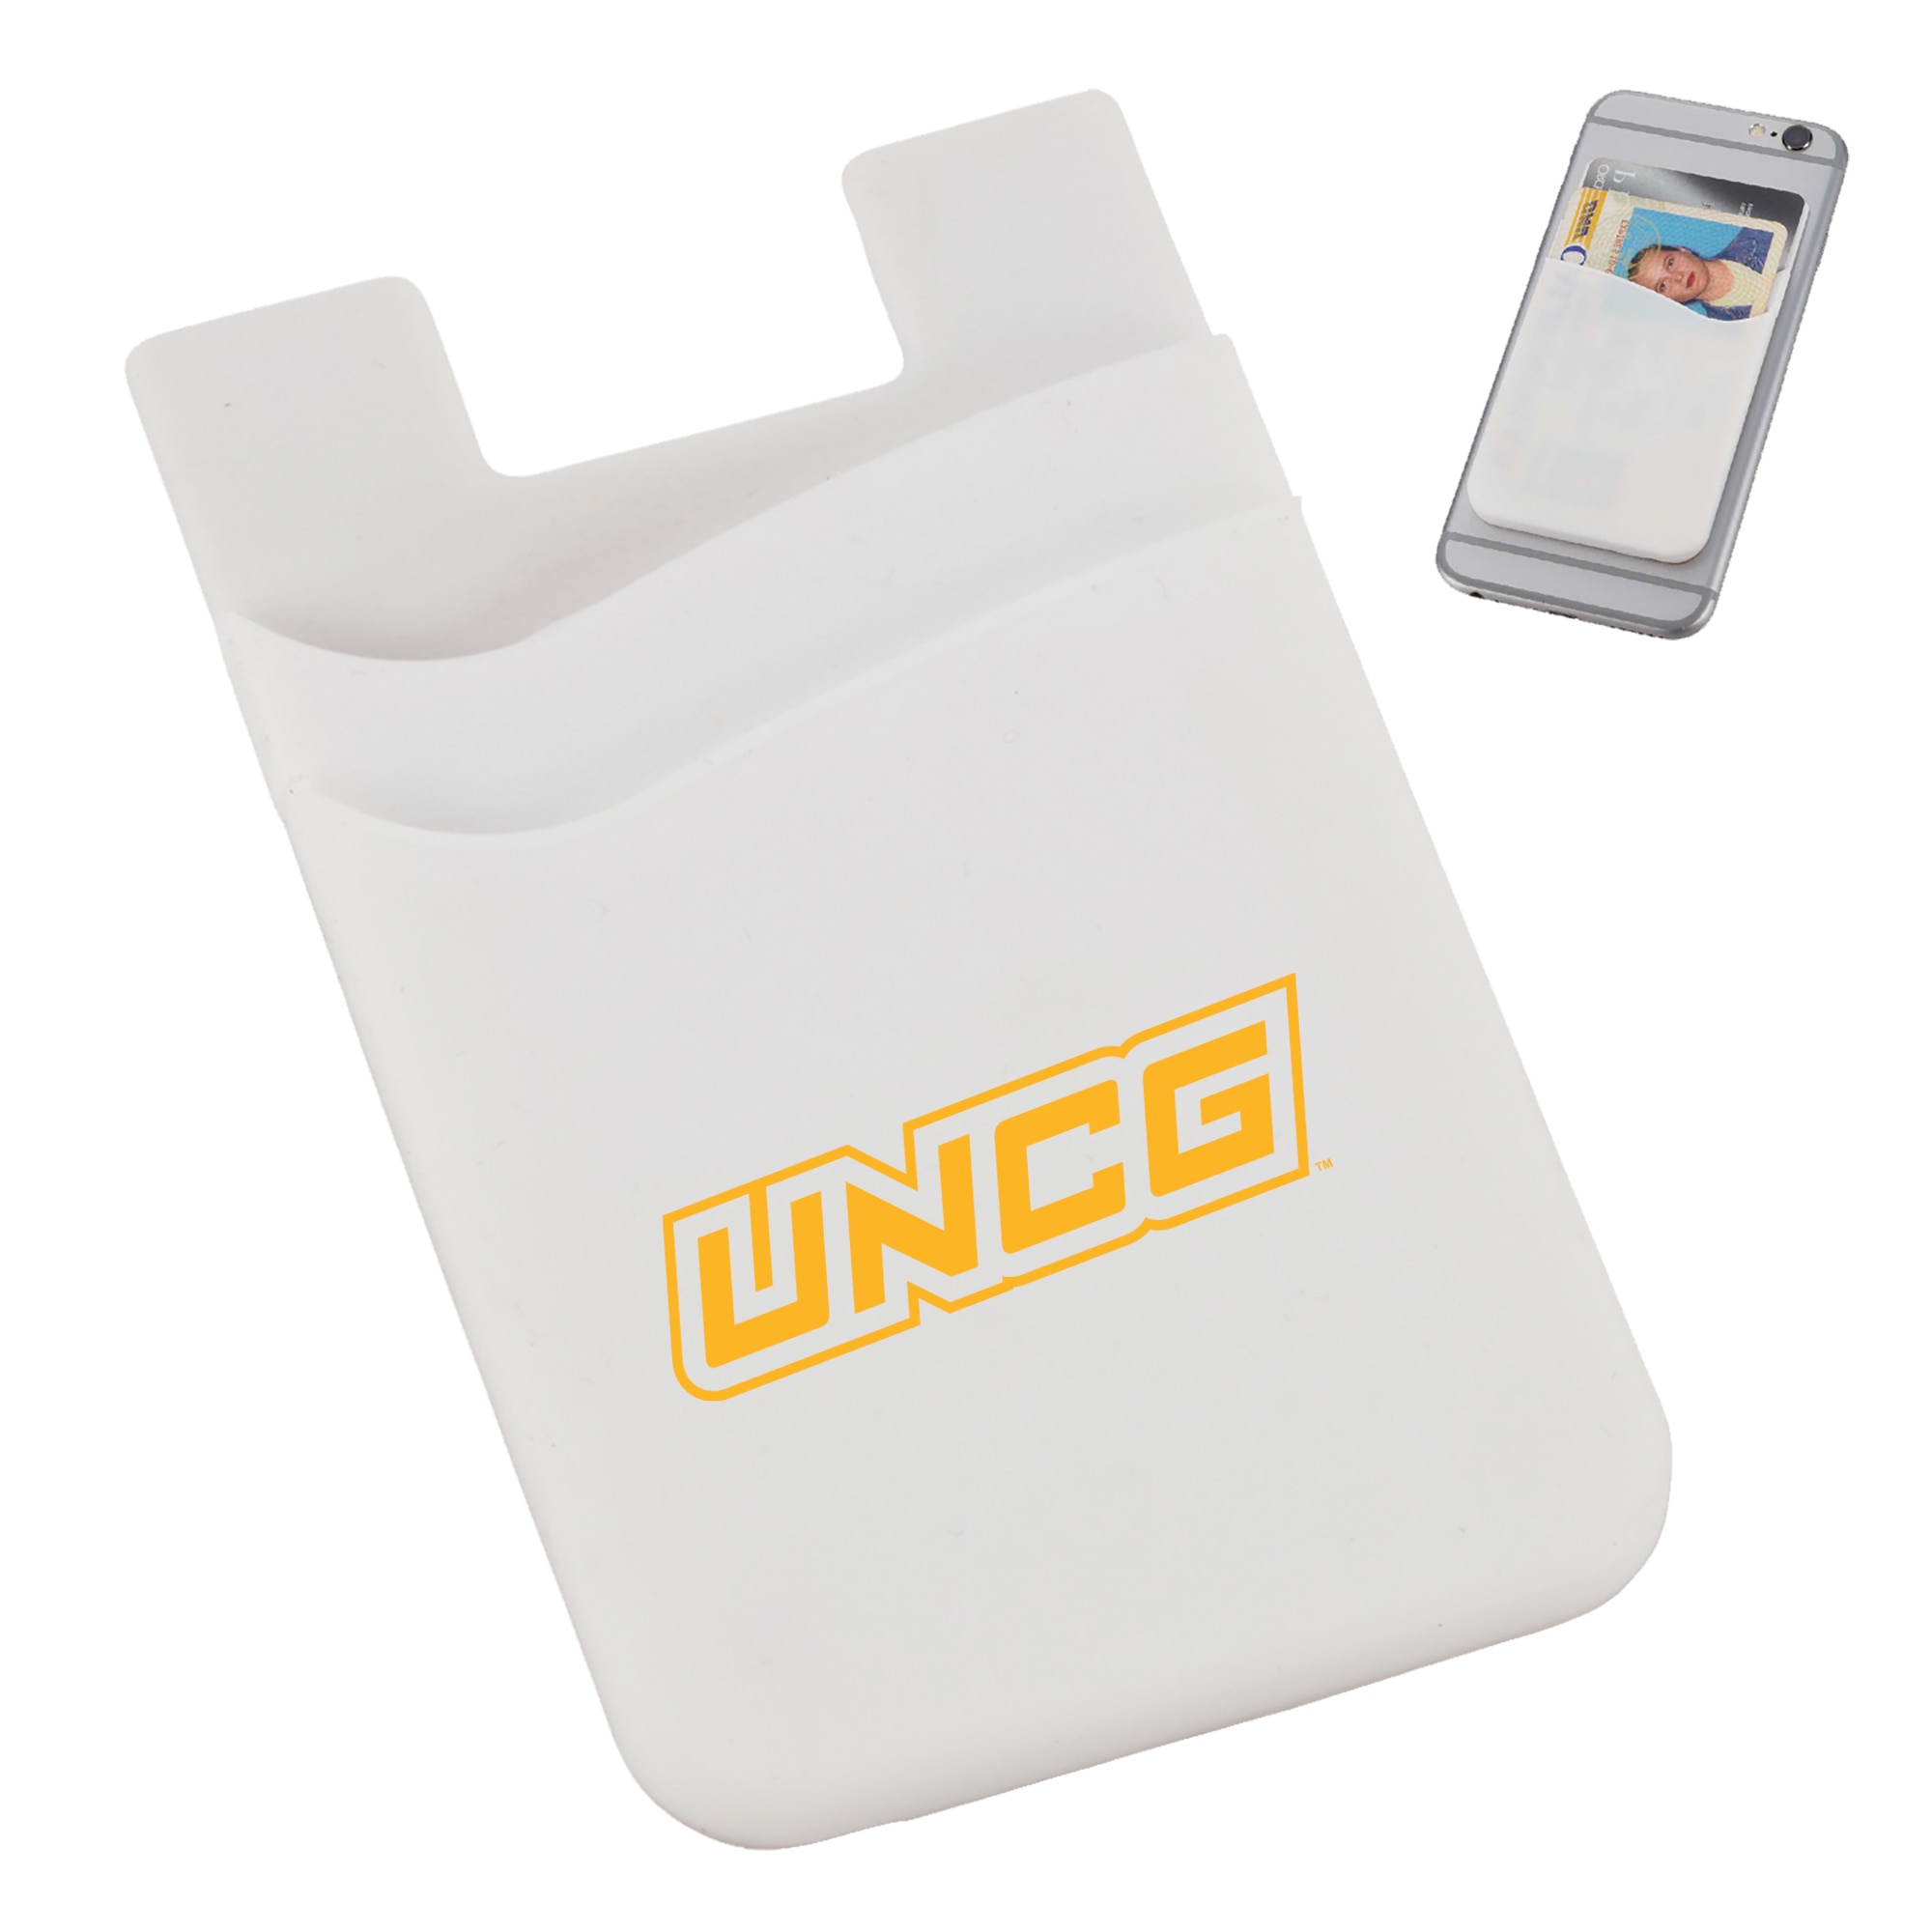 University of North Carolina at Greensboro Dual Pocket Phone Wallet